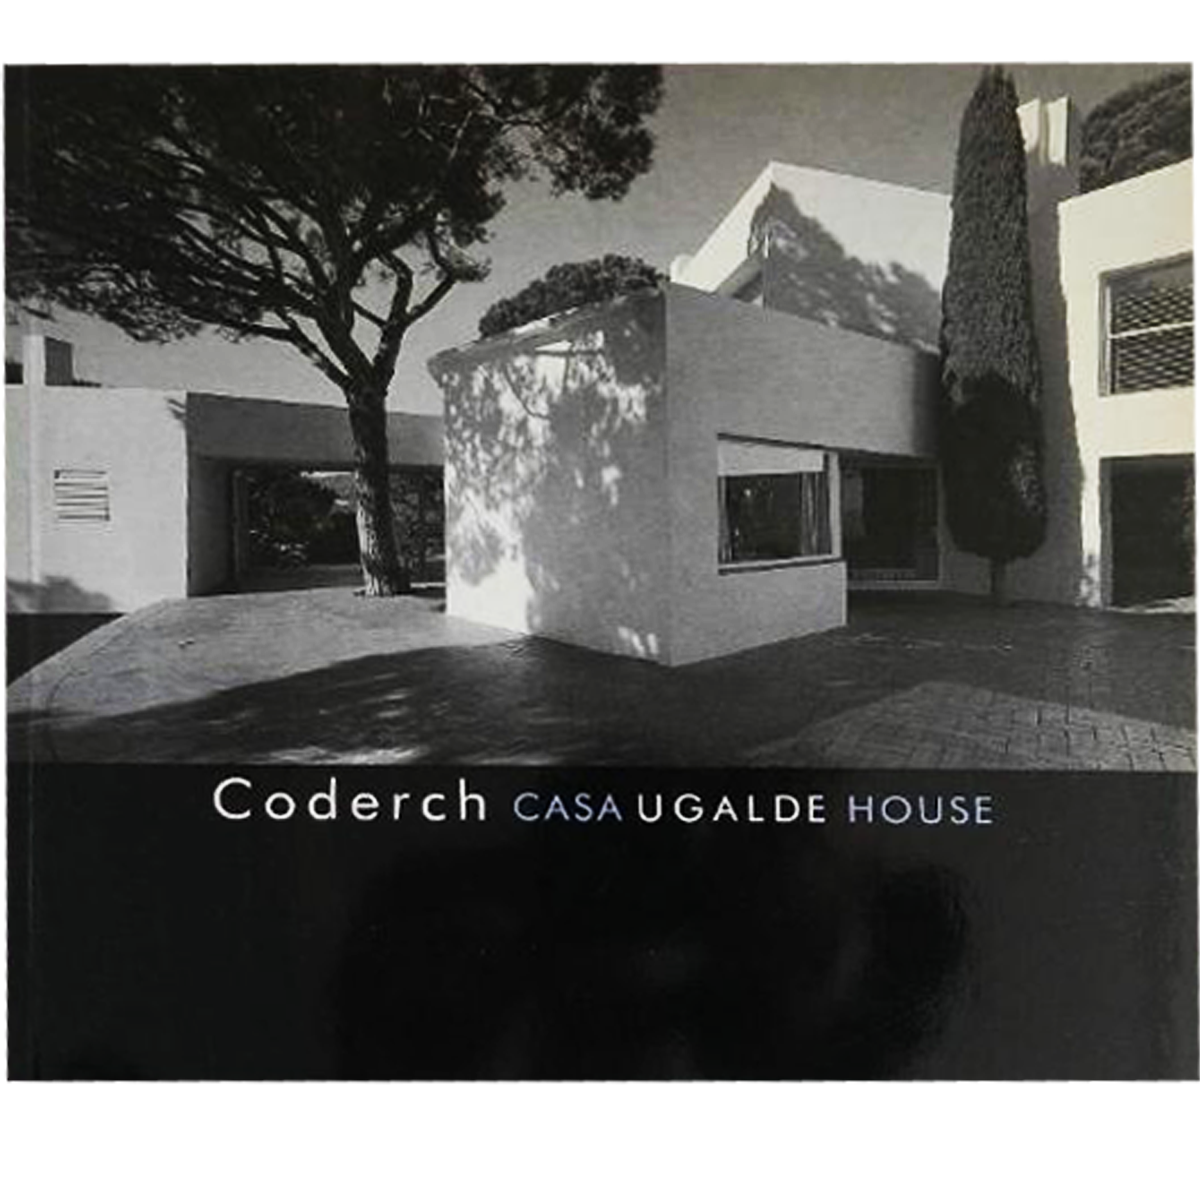 Coderch, Casa Ugalde